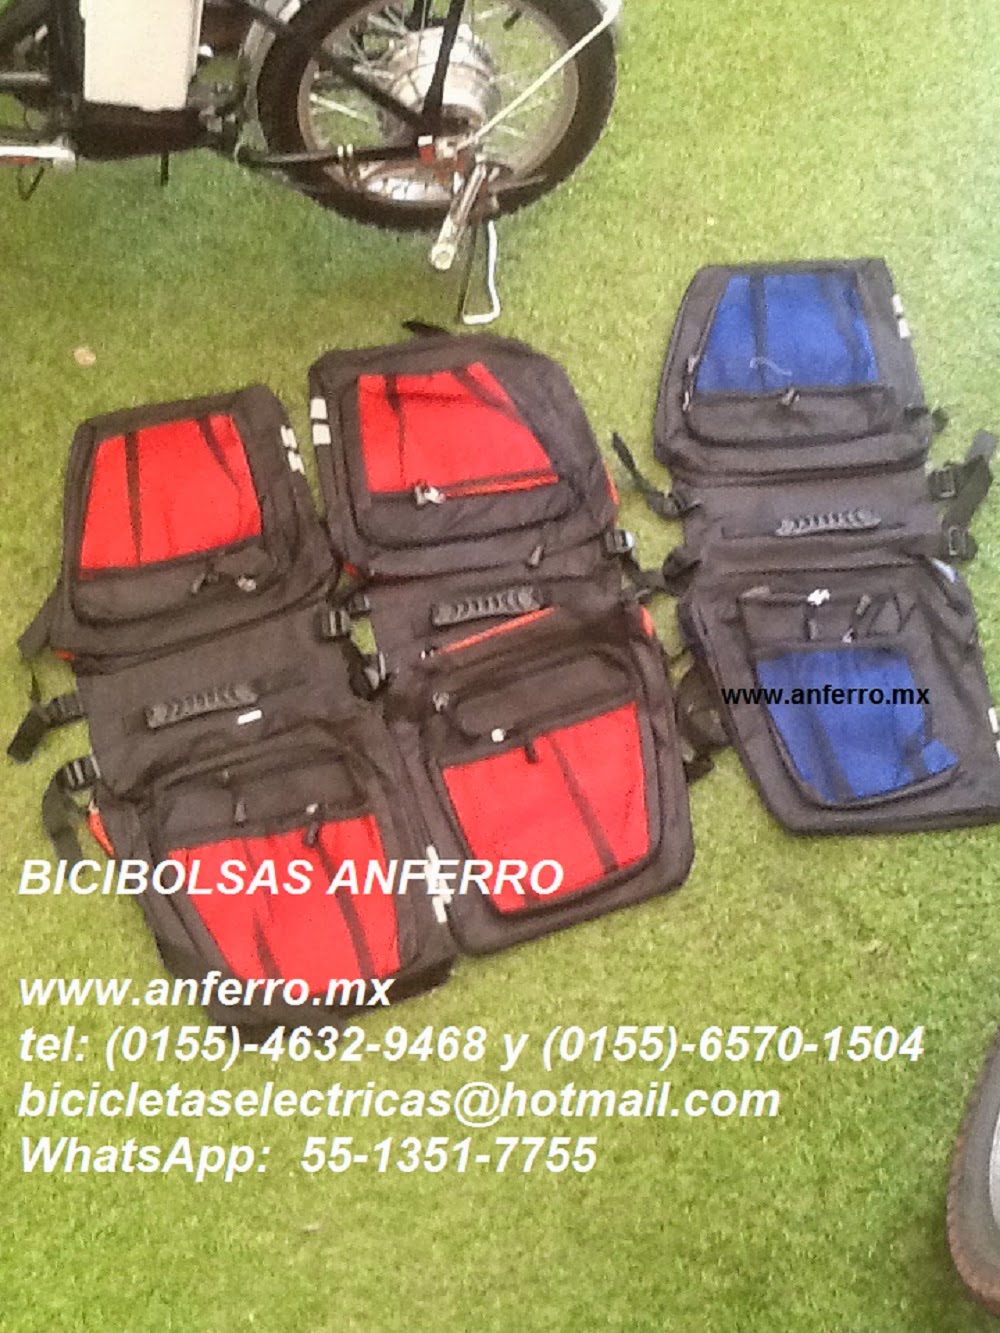 ALFORJAS PARA BICICLETA MEXICO 0155-4632-9468 bicicletaselectricas@hotmail.com